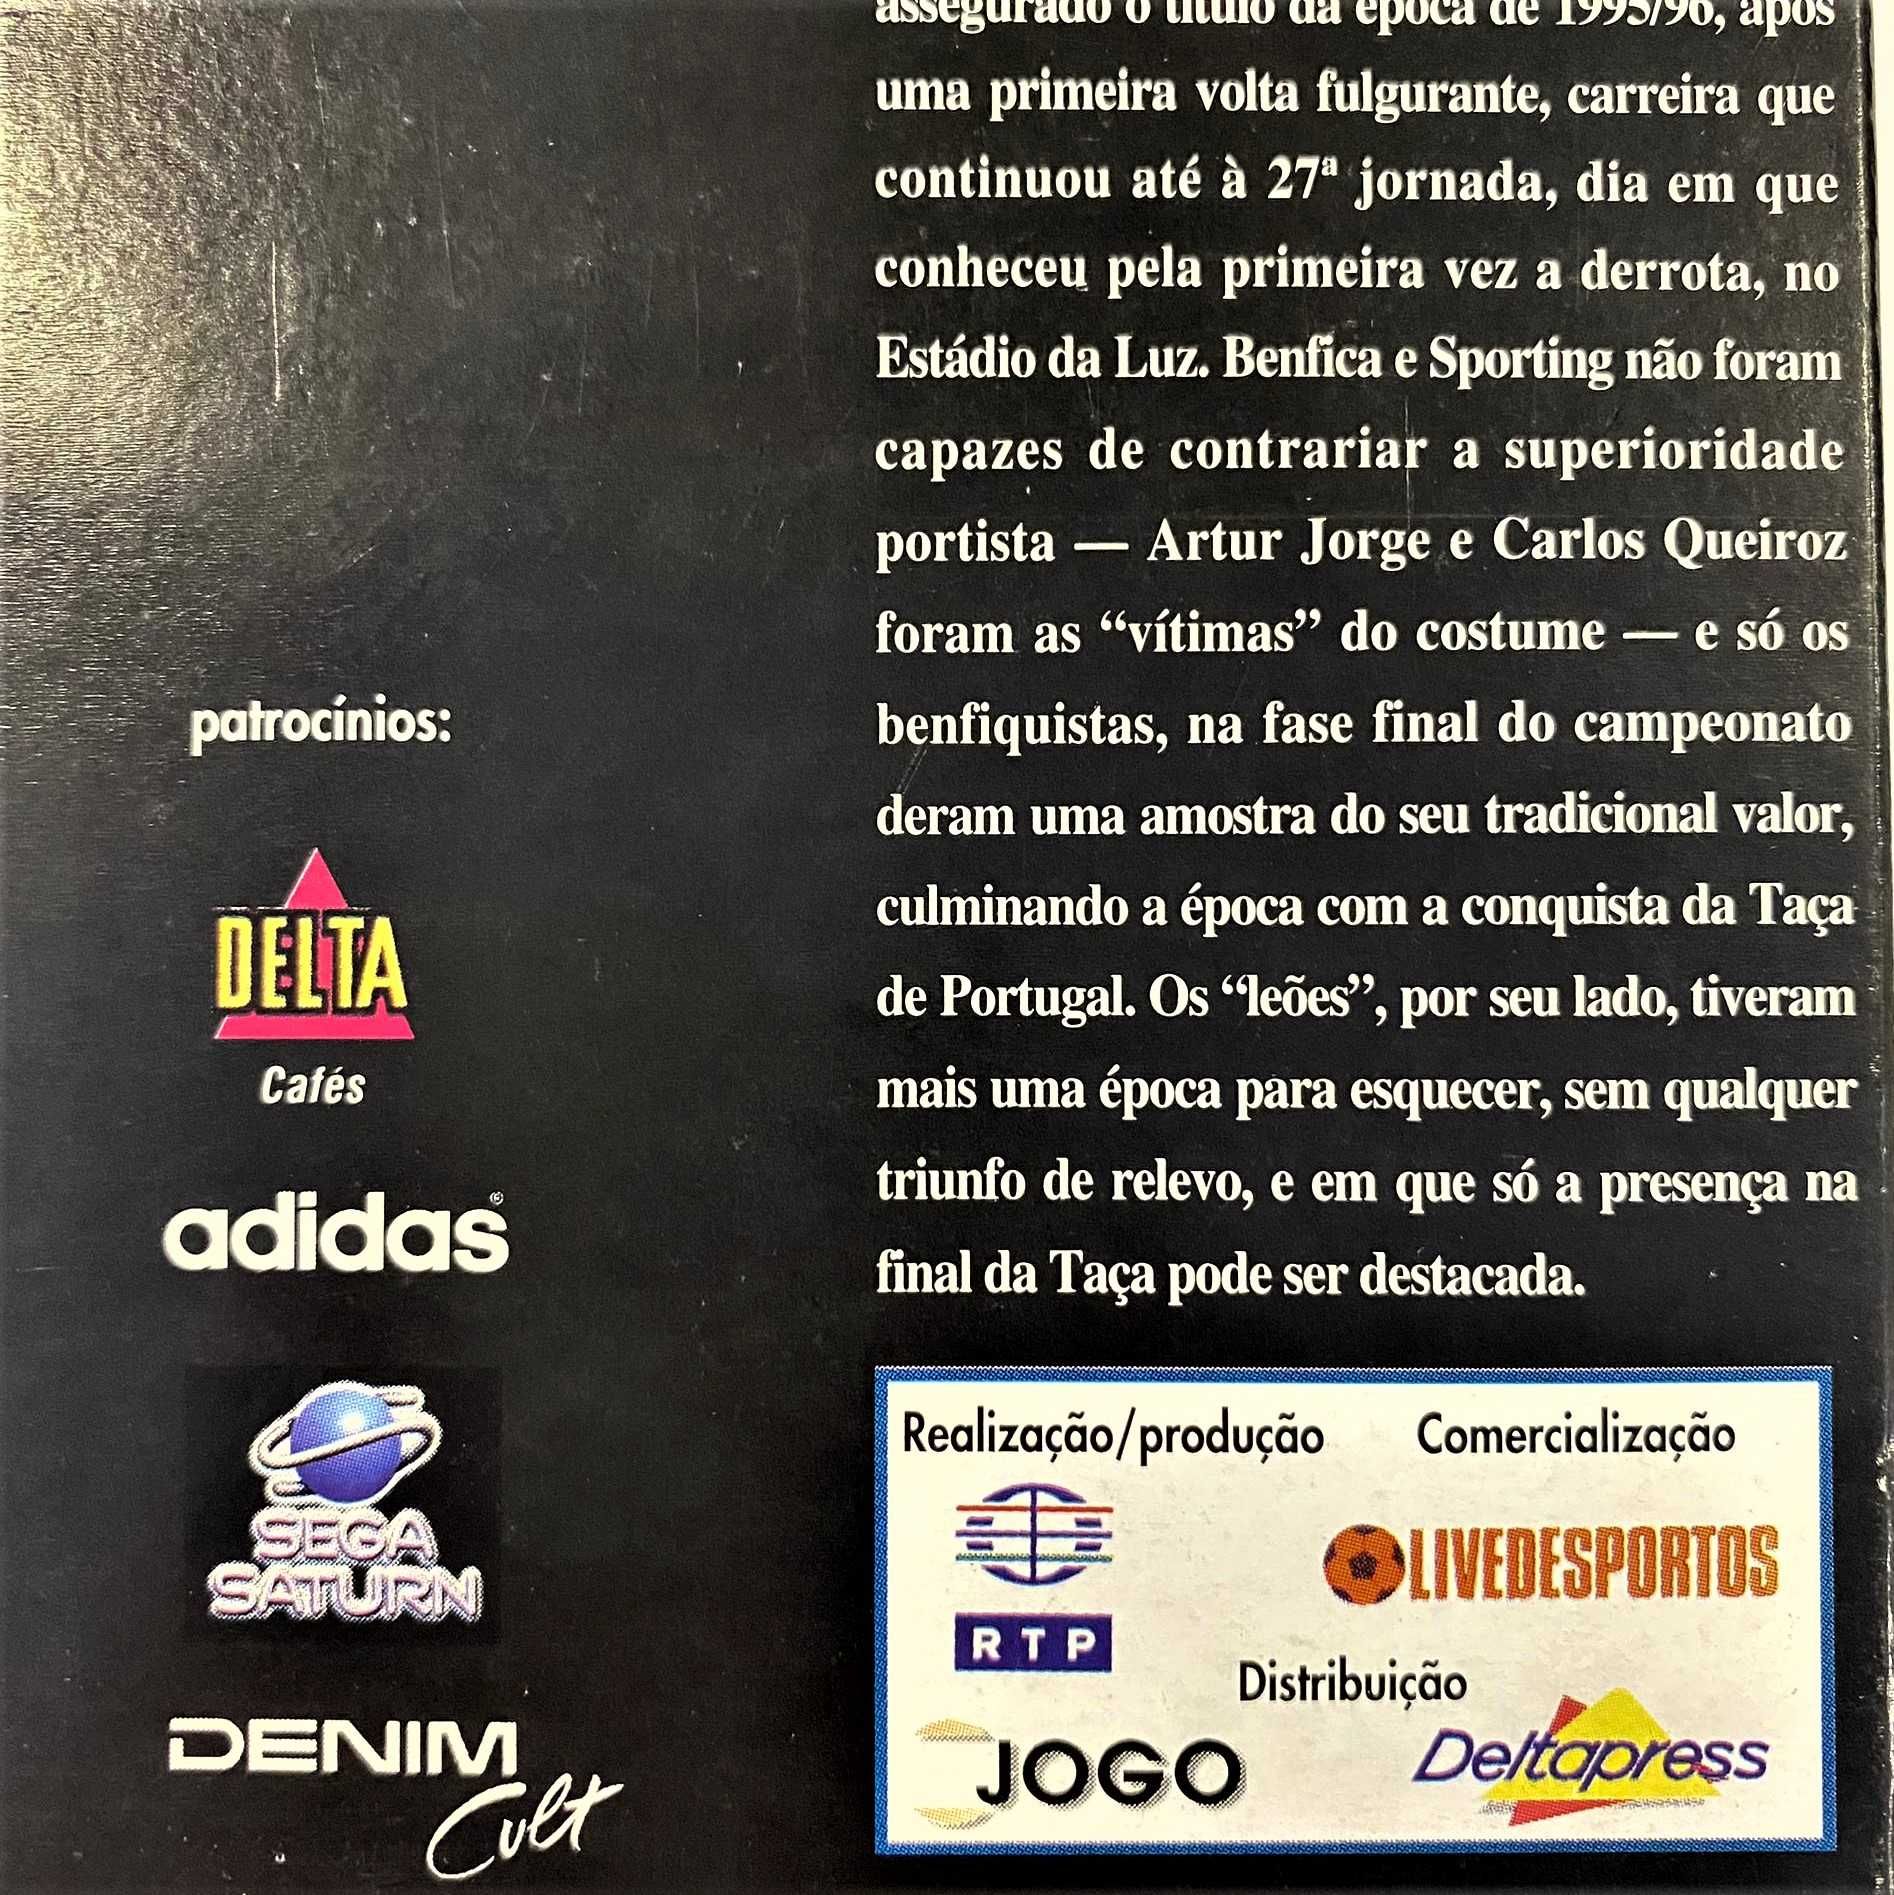 Cassete VHS Campeonato Nacional de Futebol 95/96